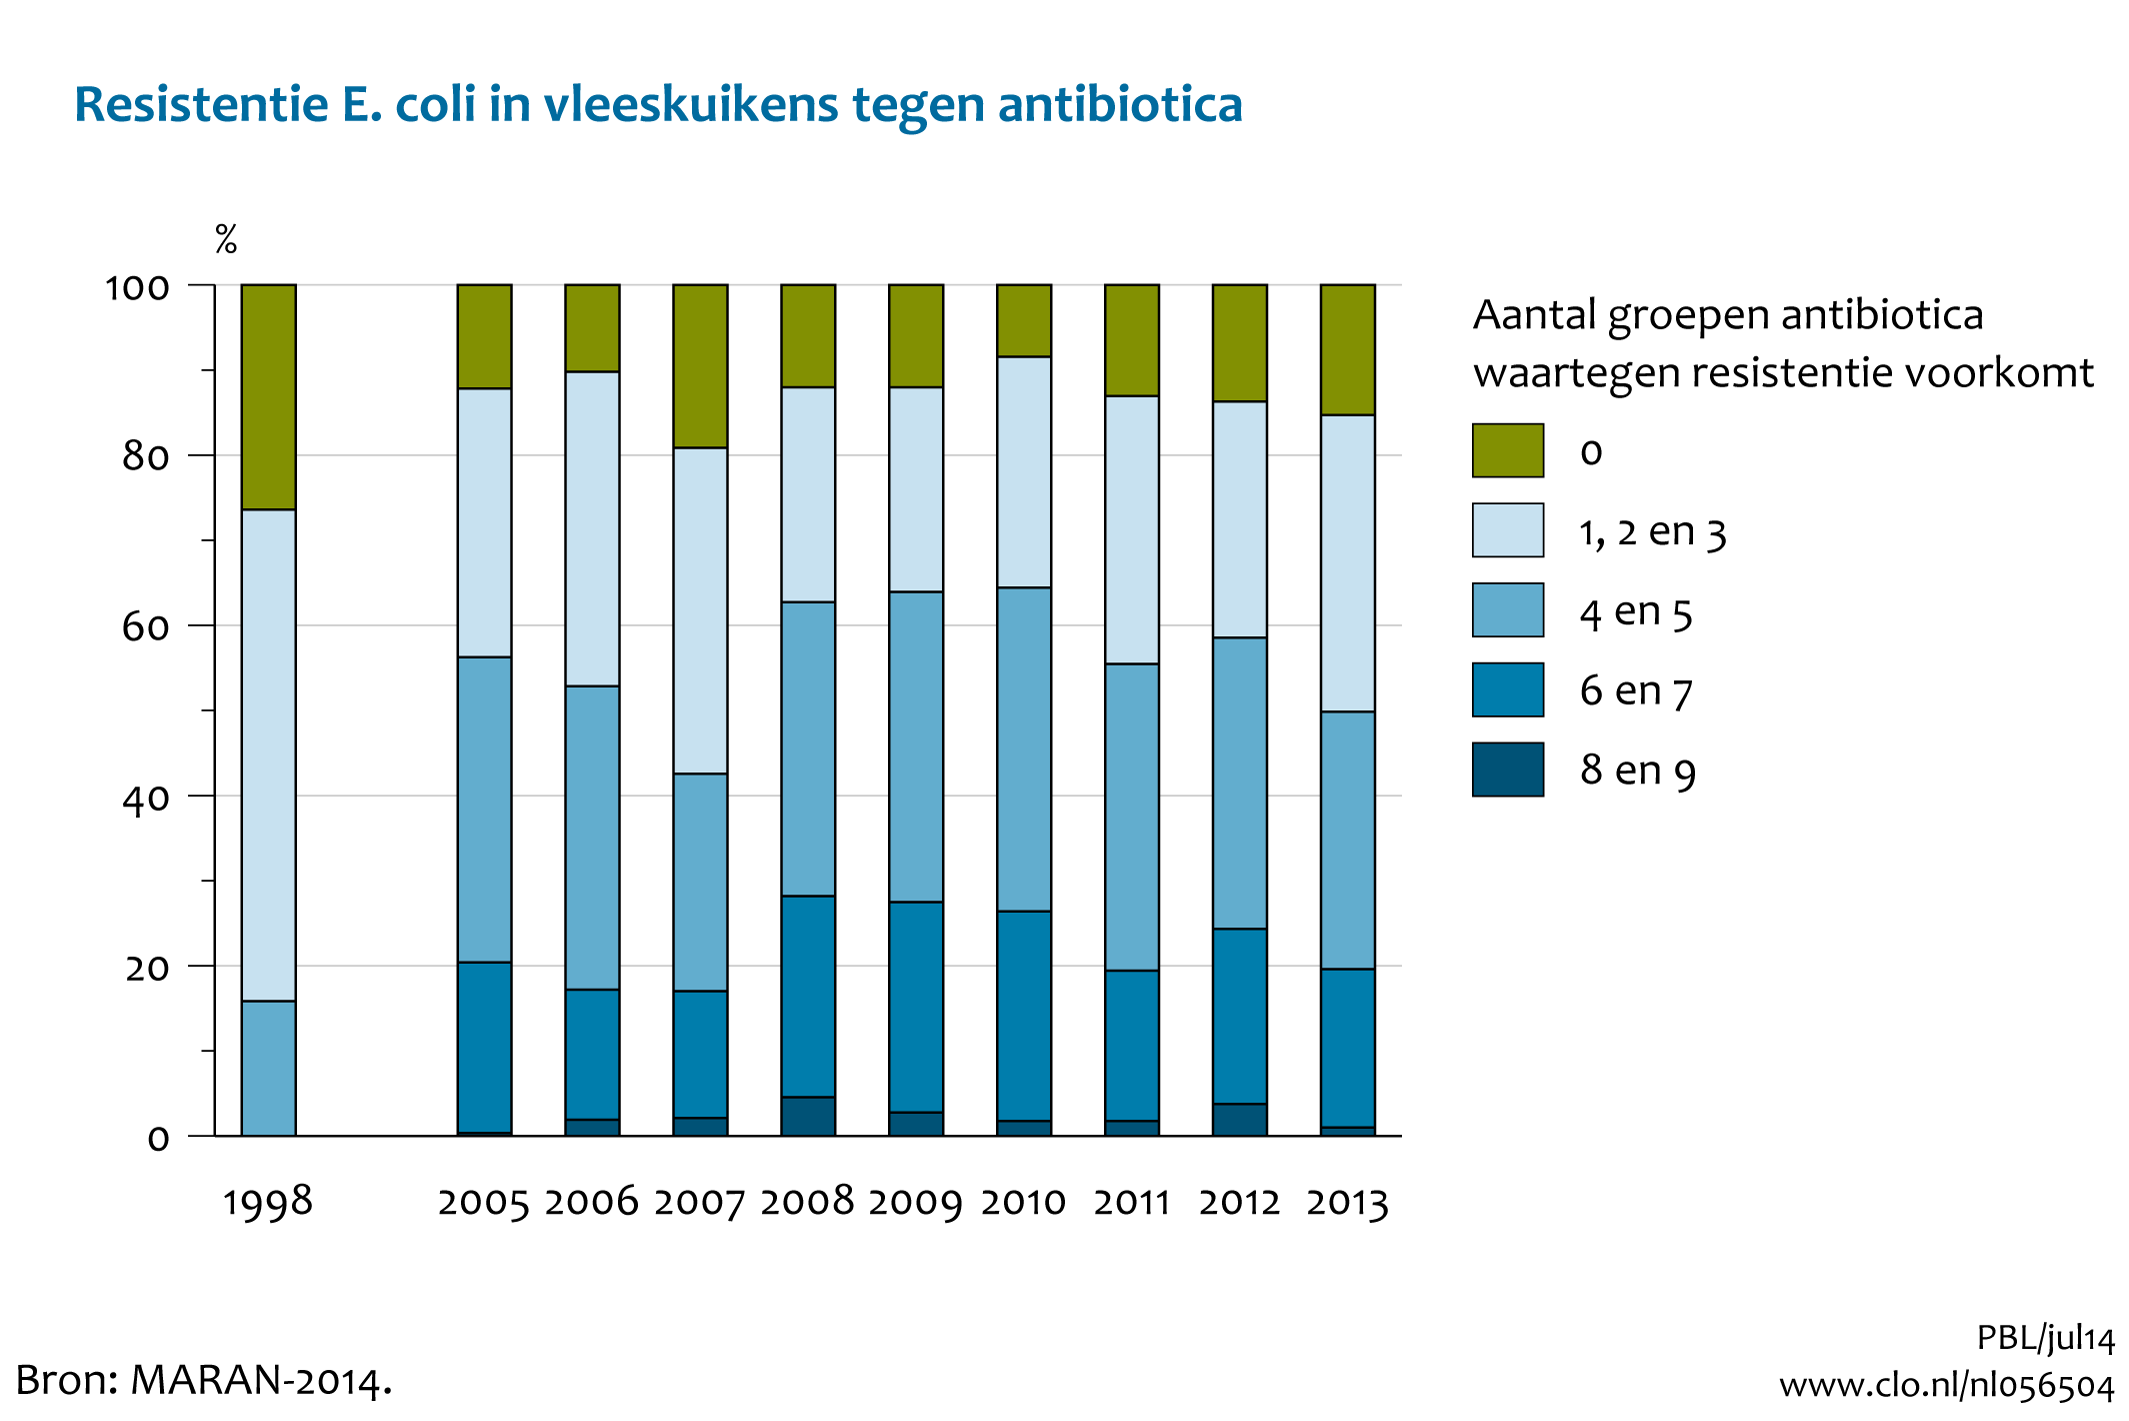 Figuur Resistentie E.coli in vleeskuikens tegen antibiotica. Steeds meer dieren dragen bacteriën met meervoudige resistentie tegen antibiotica.. In de rest van de tekst wordt deze figuur uitgebreider uitgelegd.